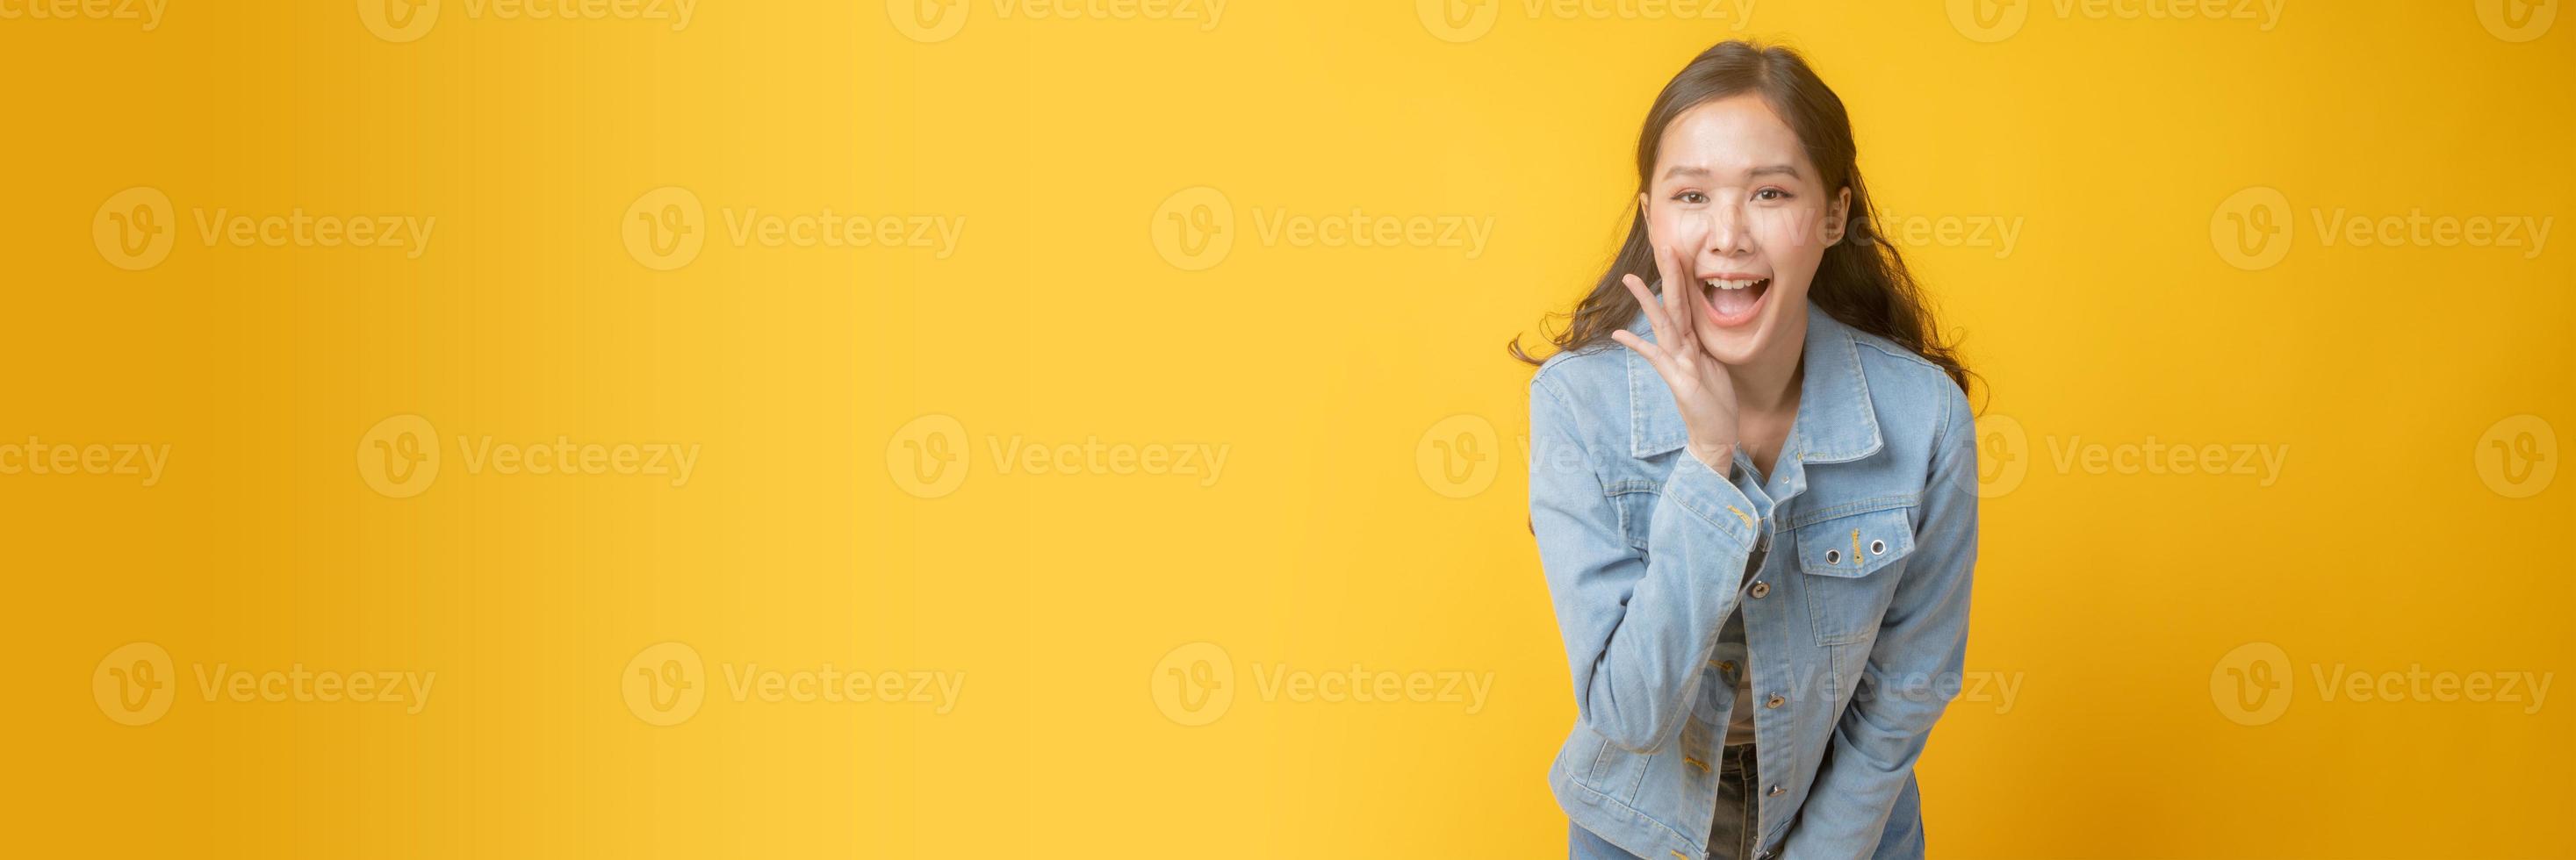 asiatische Frau, die mit Hand neben Mund auf gelbem Hintergrund lächelt und gestikuliert foto